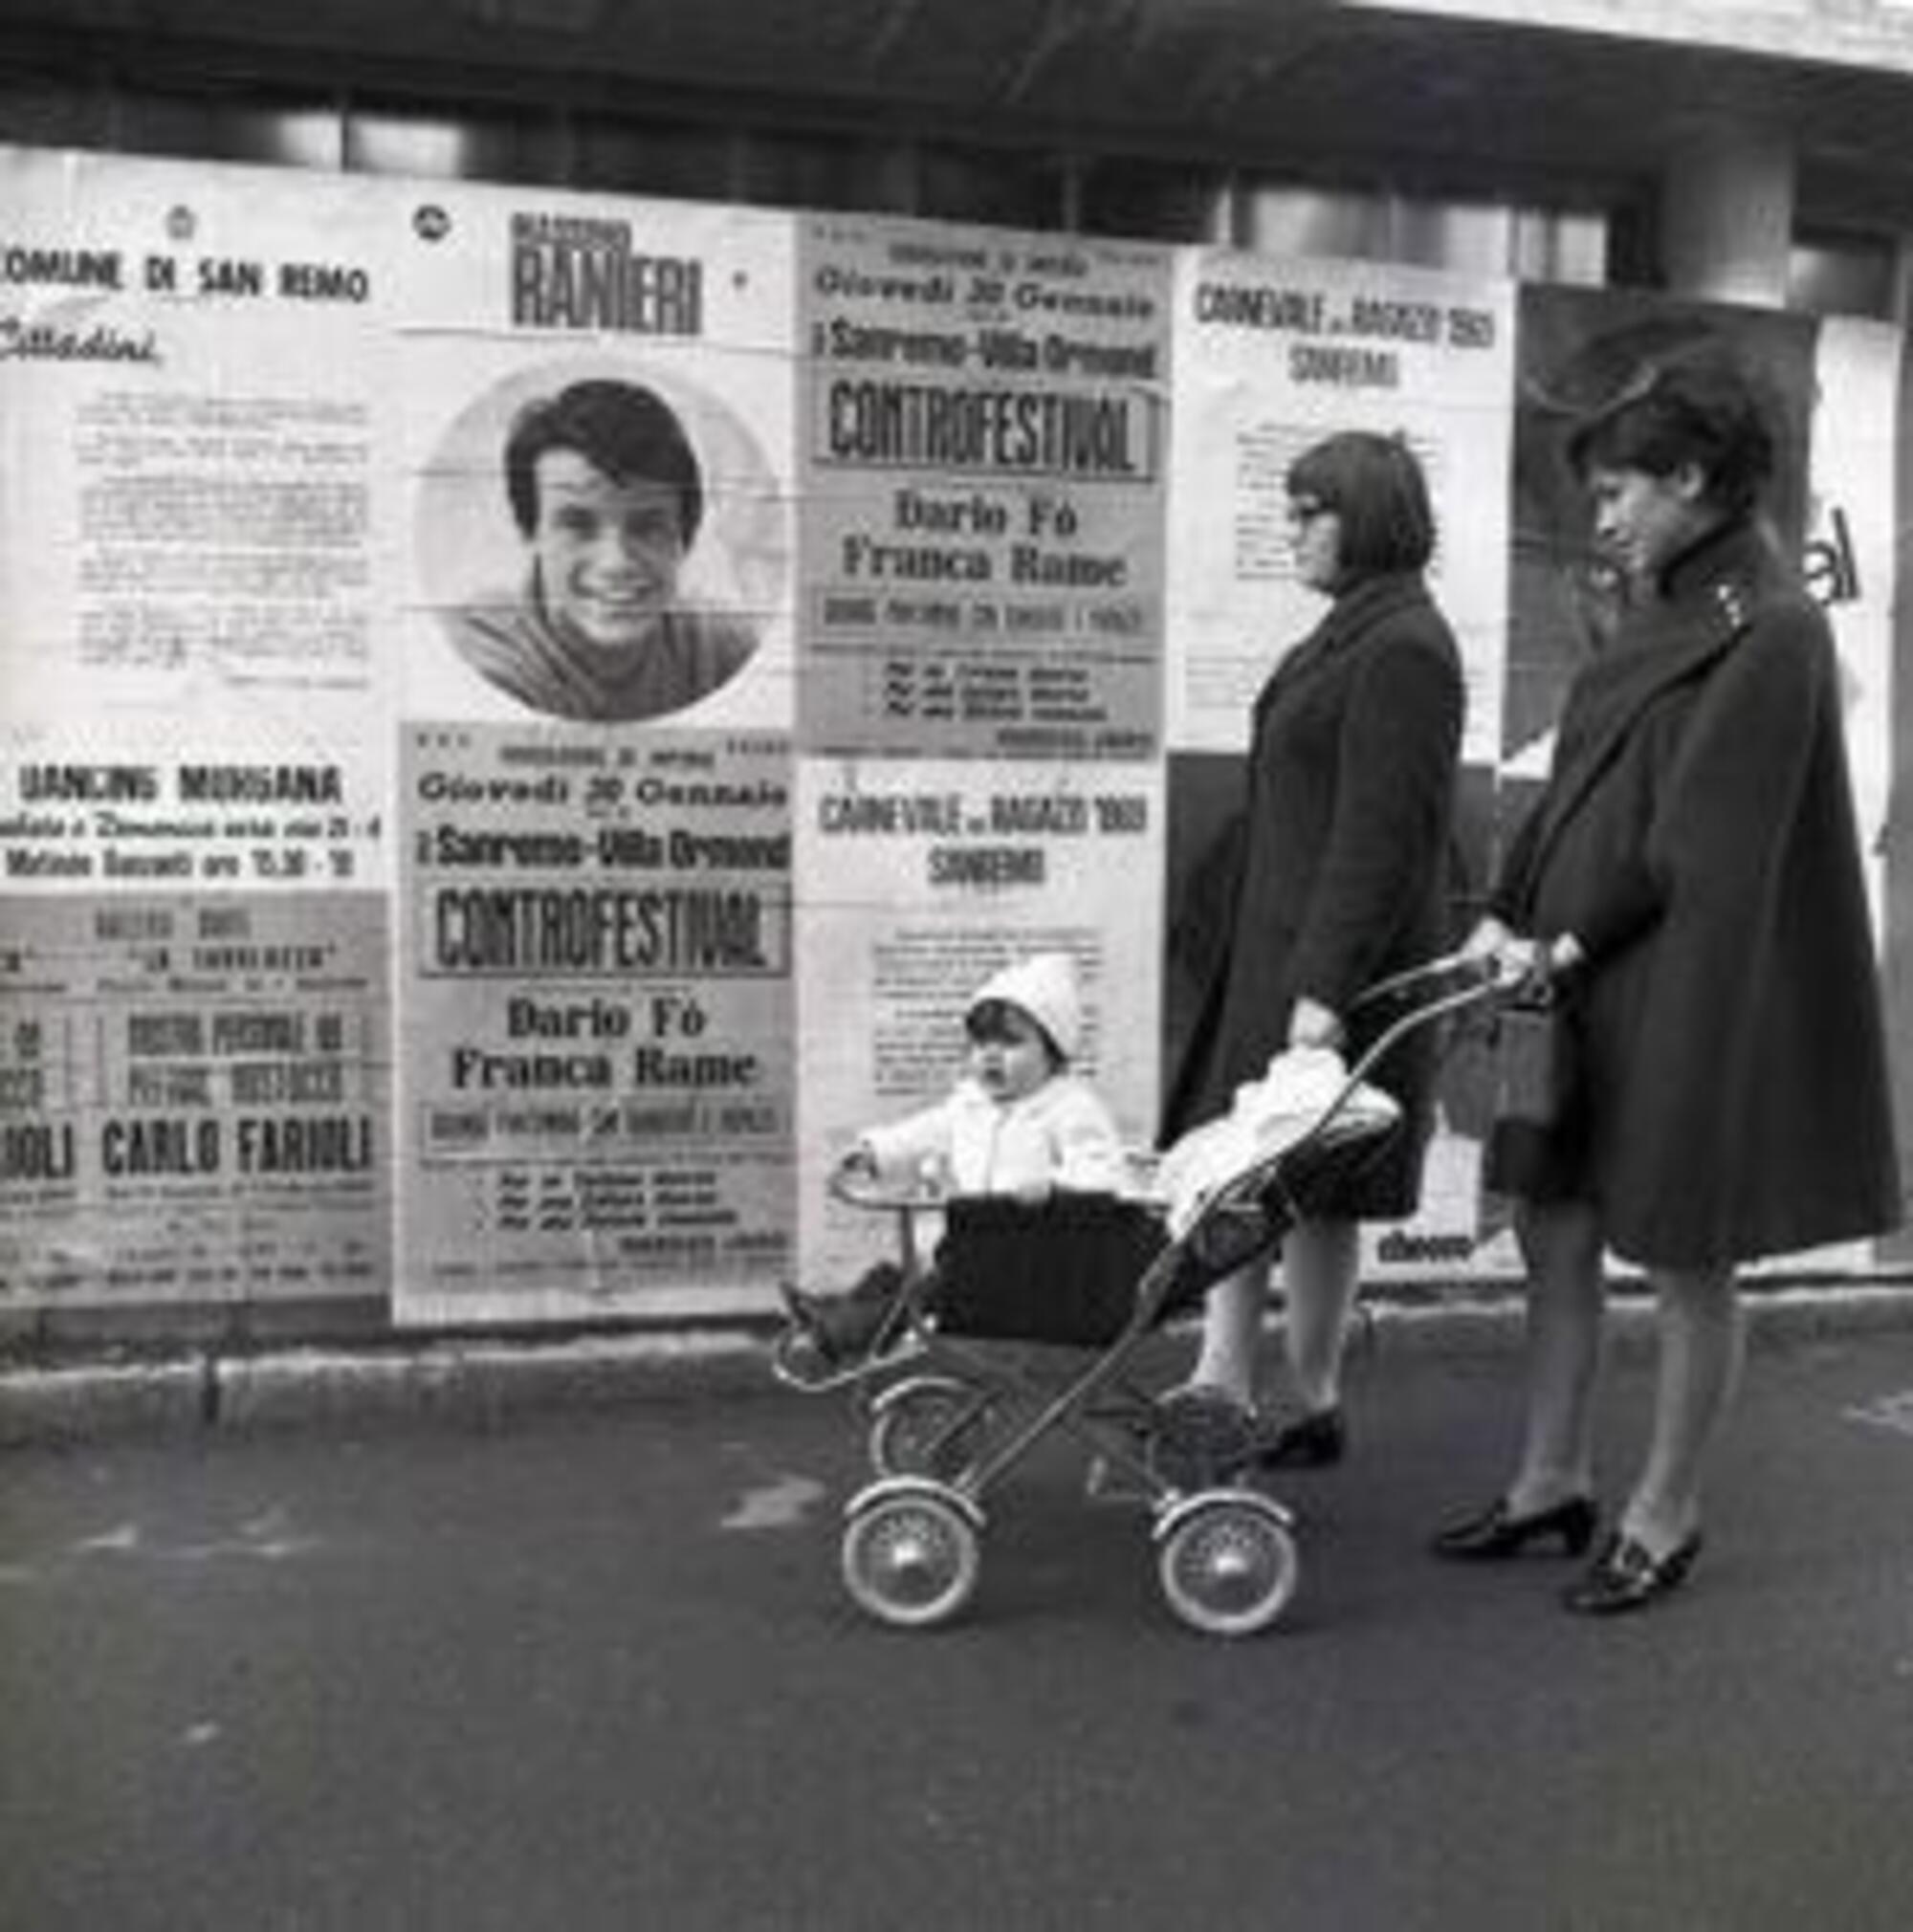 Manifesti sulle strade di Sanremo che promuovevano il ControFestival del 1969